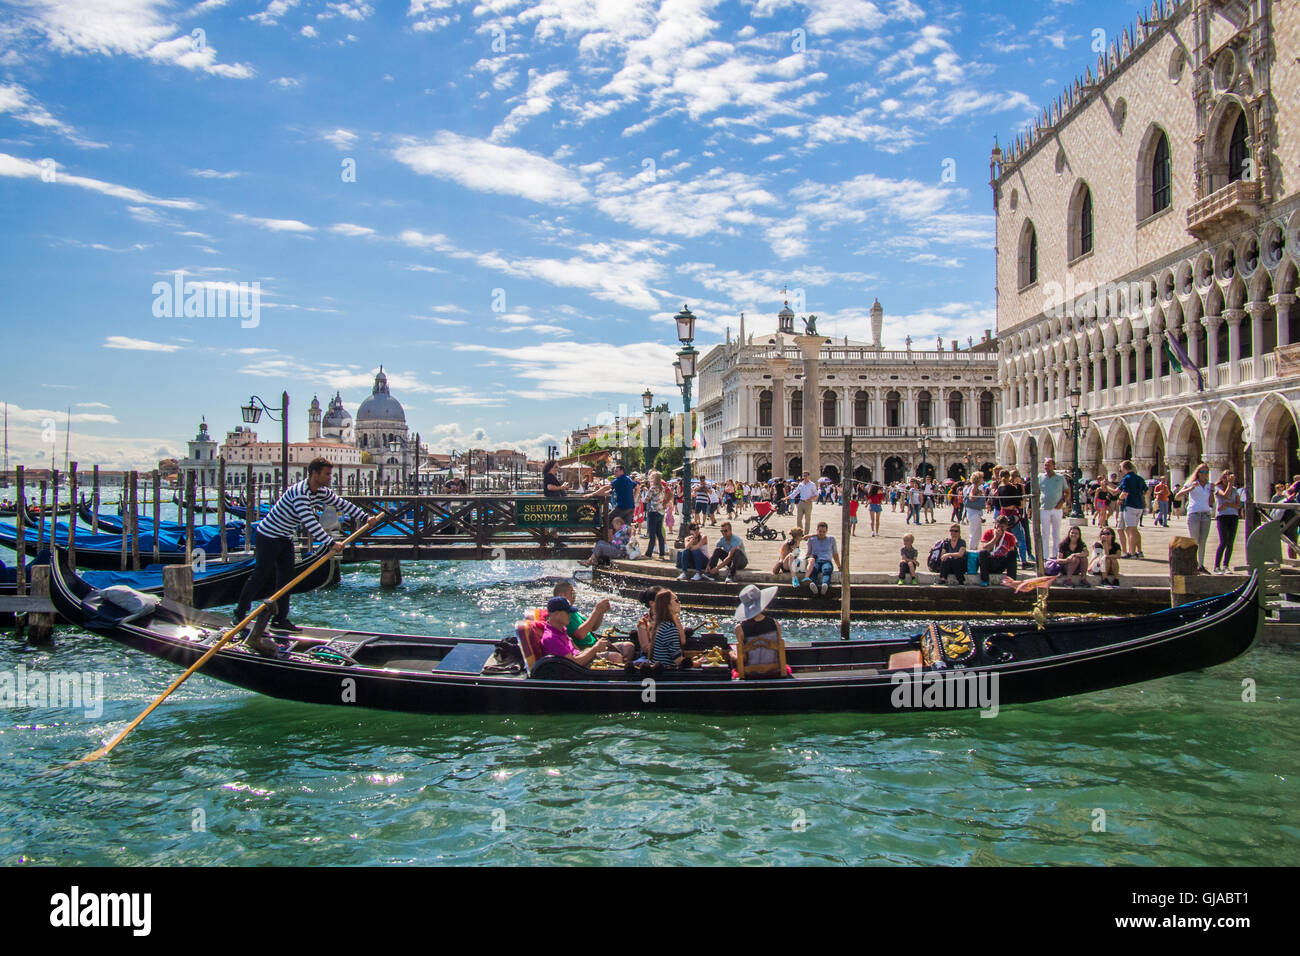 Gondola by the Doges Palace, Venice, Veneto region, Italy. Stock Photo